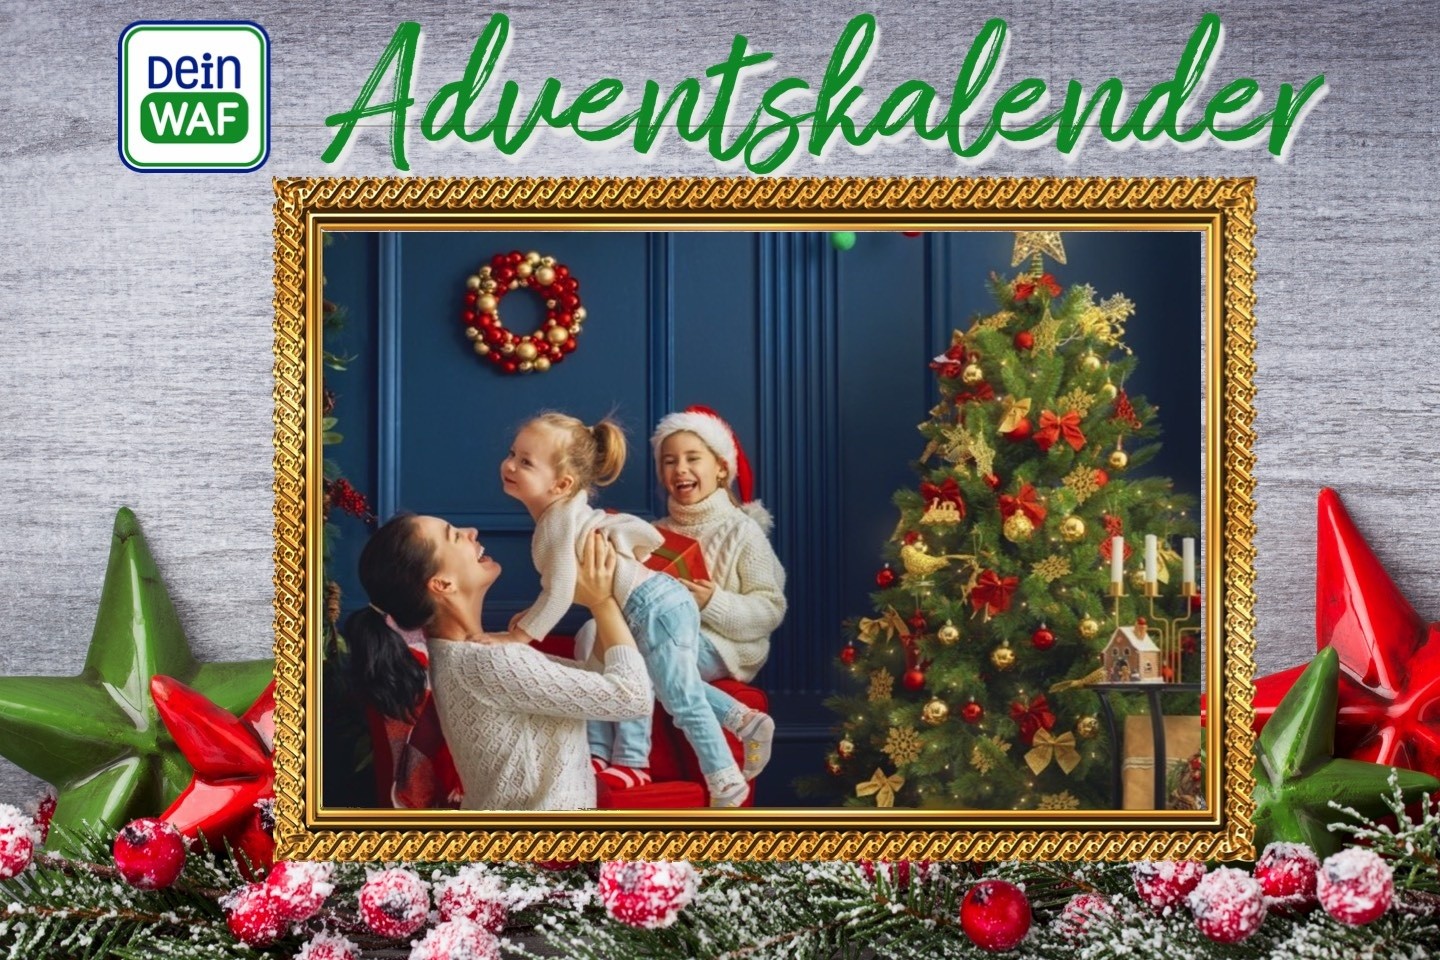 Adventskalender,Gewinnspiel,Sassenberg,Uehre Gartenland,Warendorf,Weihnachtsbaum,